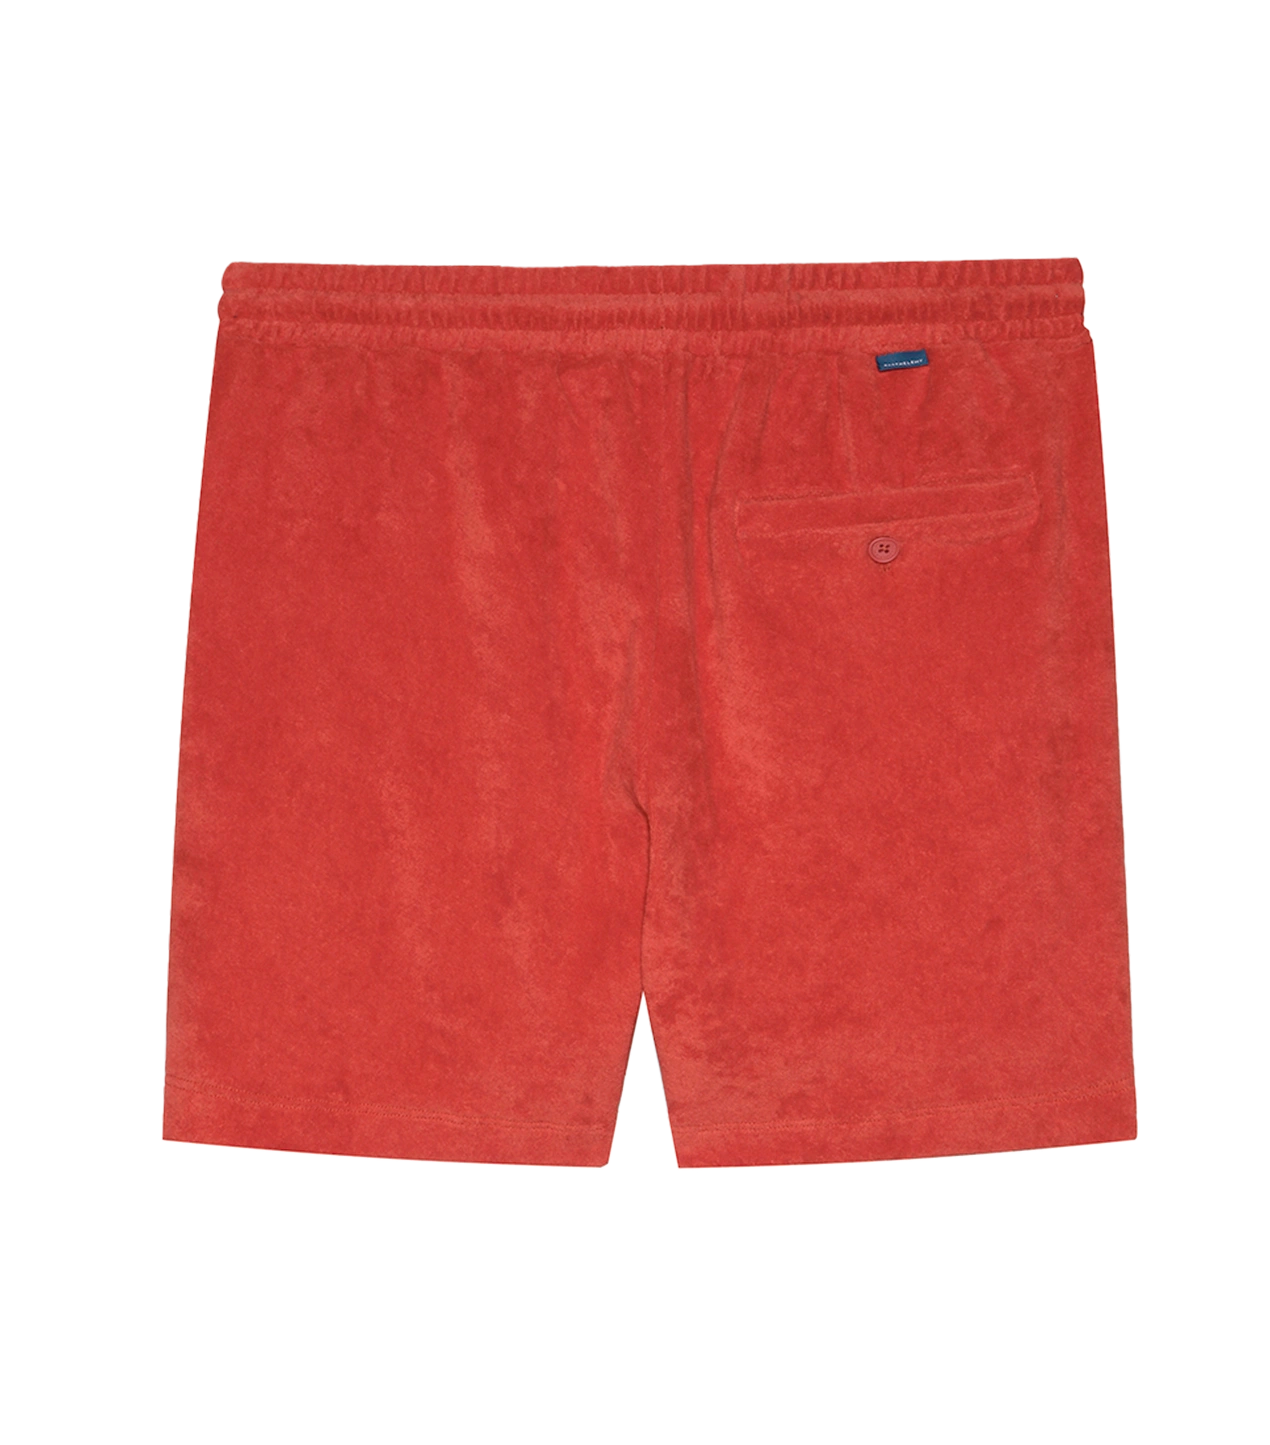 Shorts Towel Summer Orange - Barthelemy